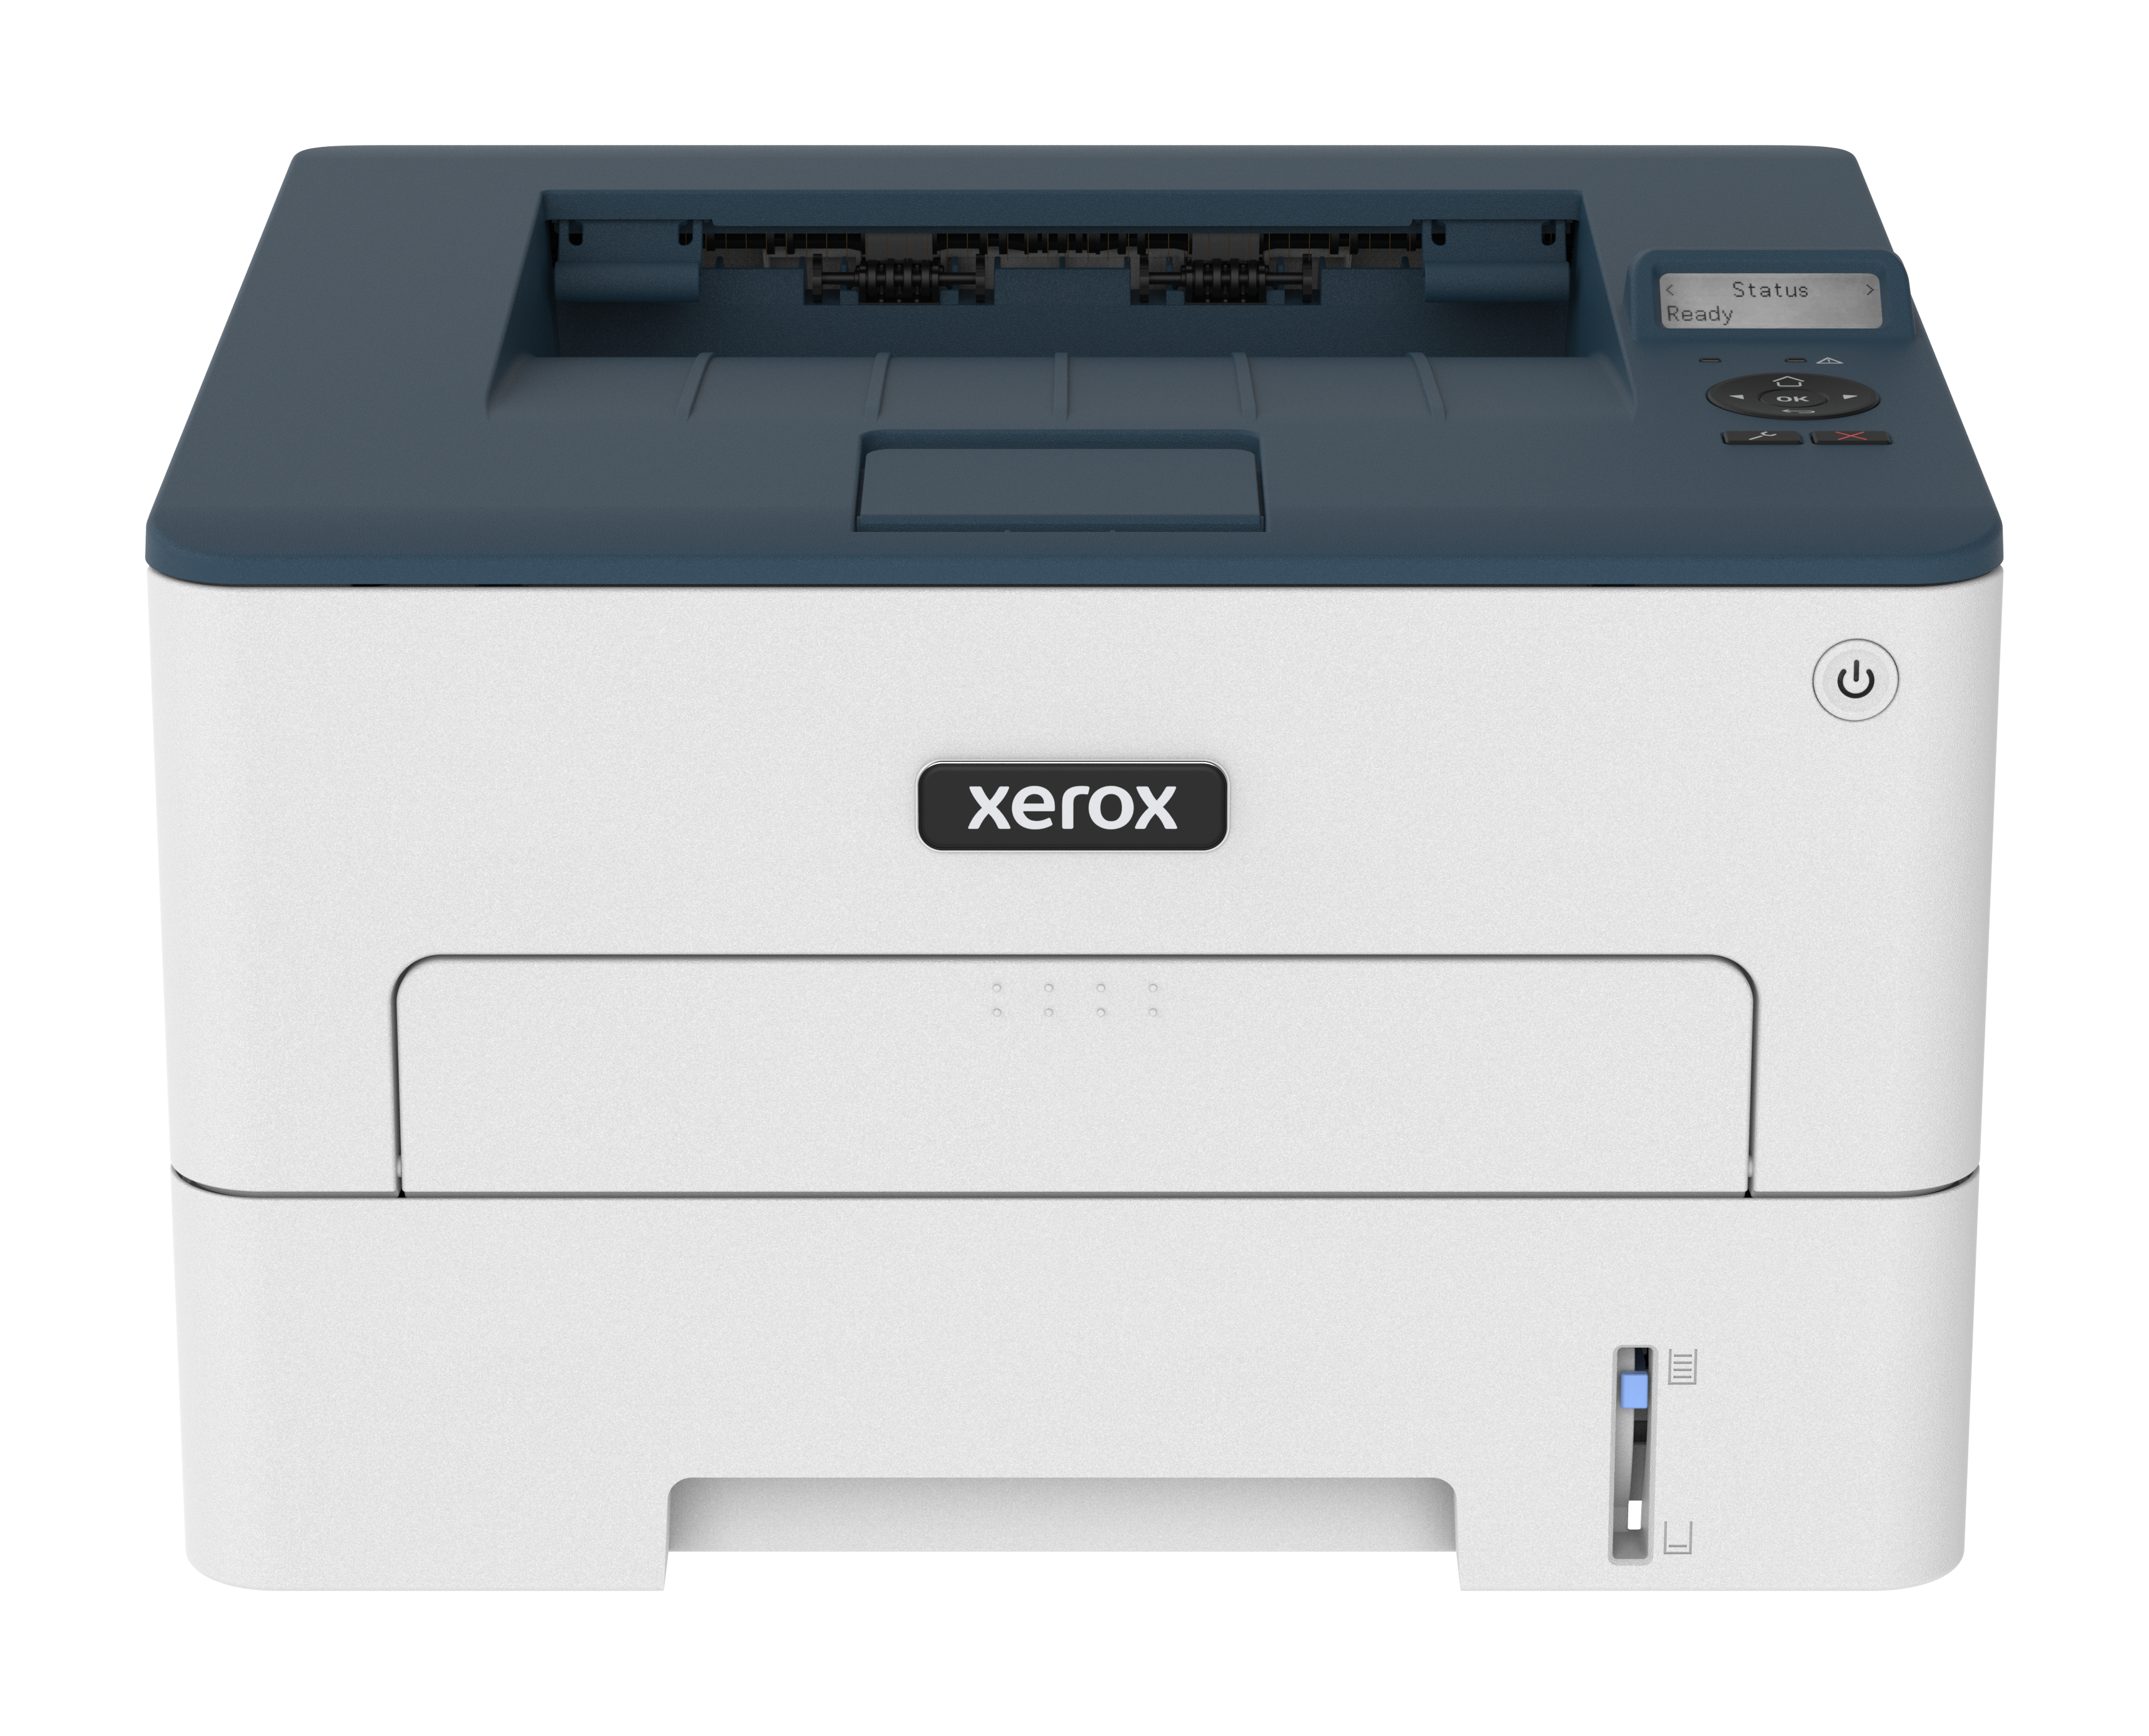 Stampante laser Xerox B230 A4 34 ppm fronte/retro wireless PCL5e/6 2 vassoi Totale 251 fogli